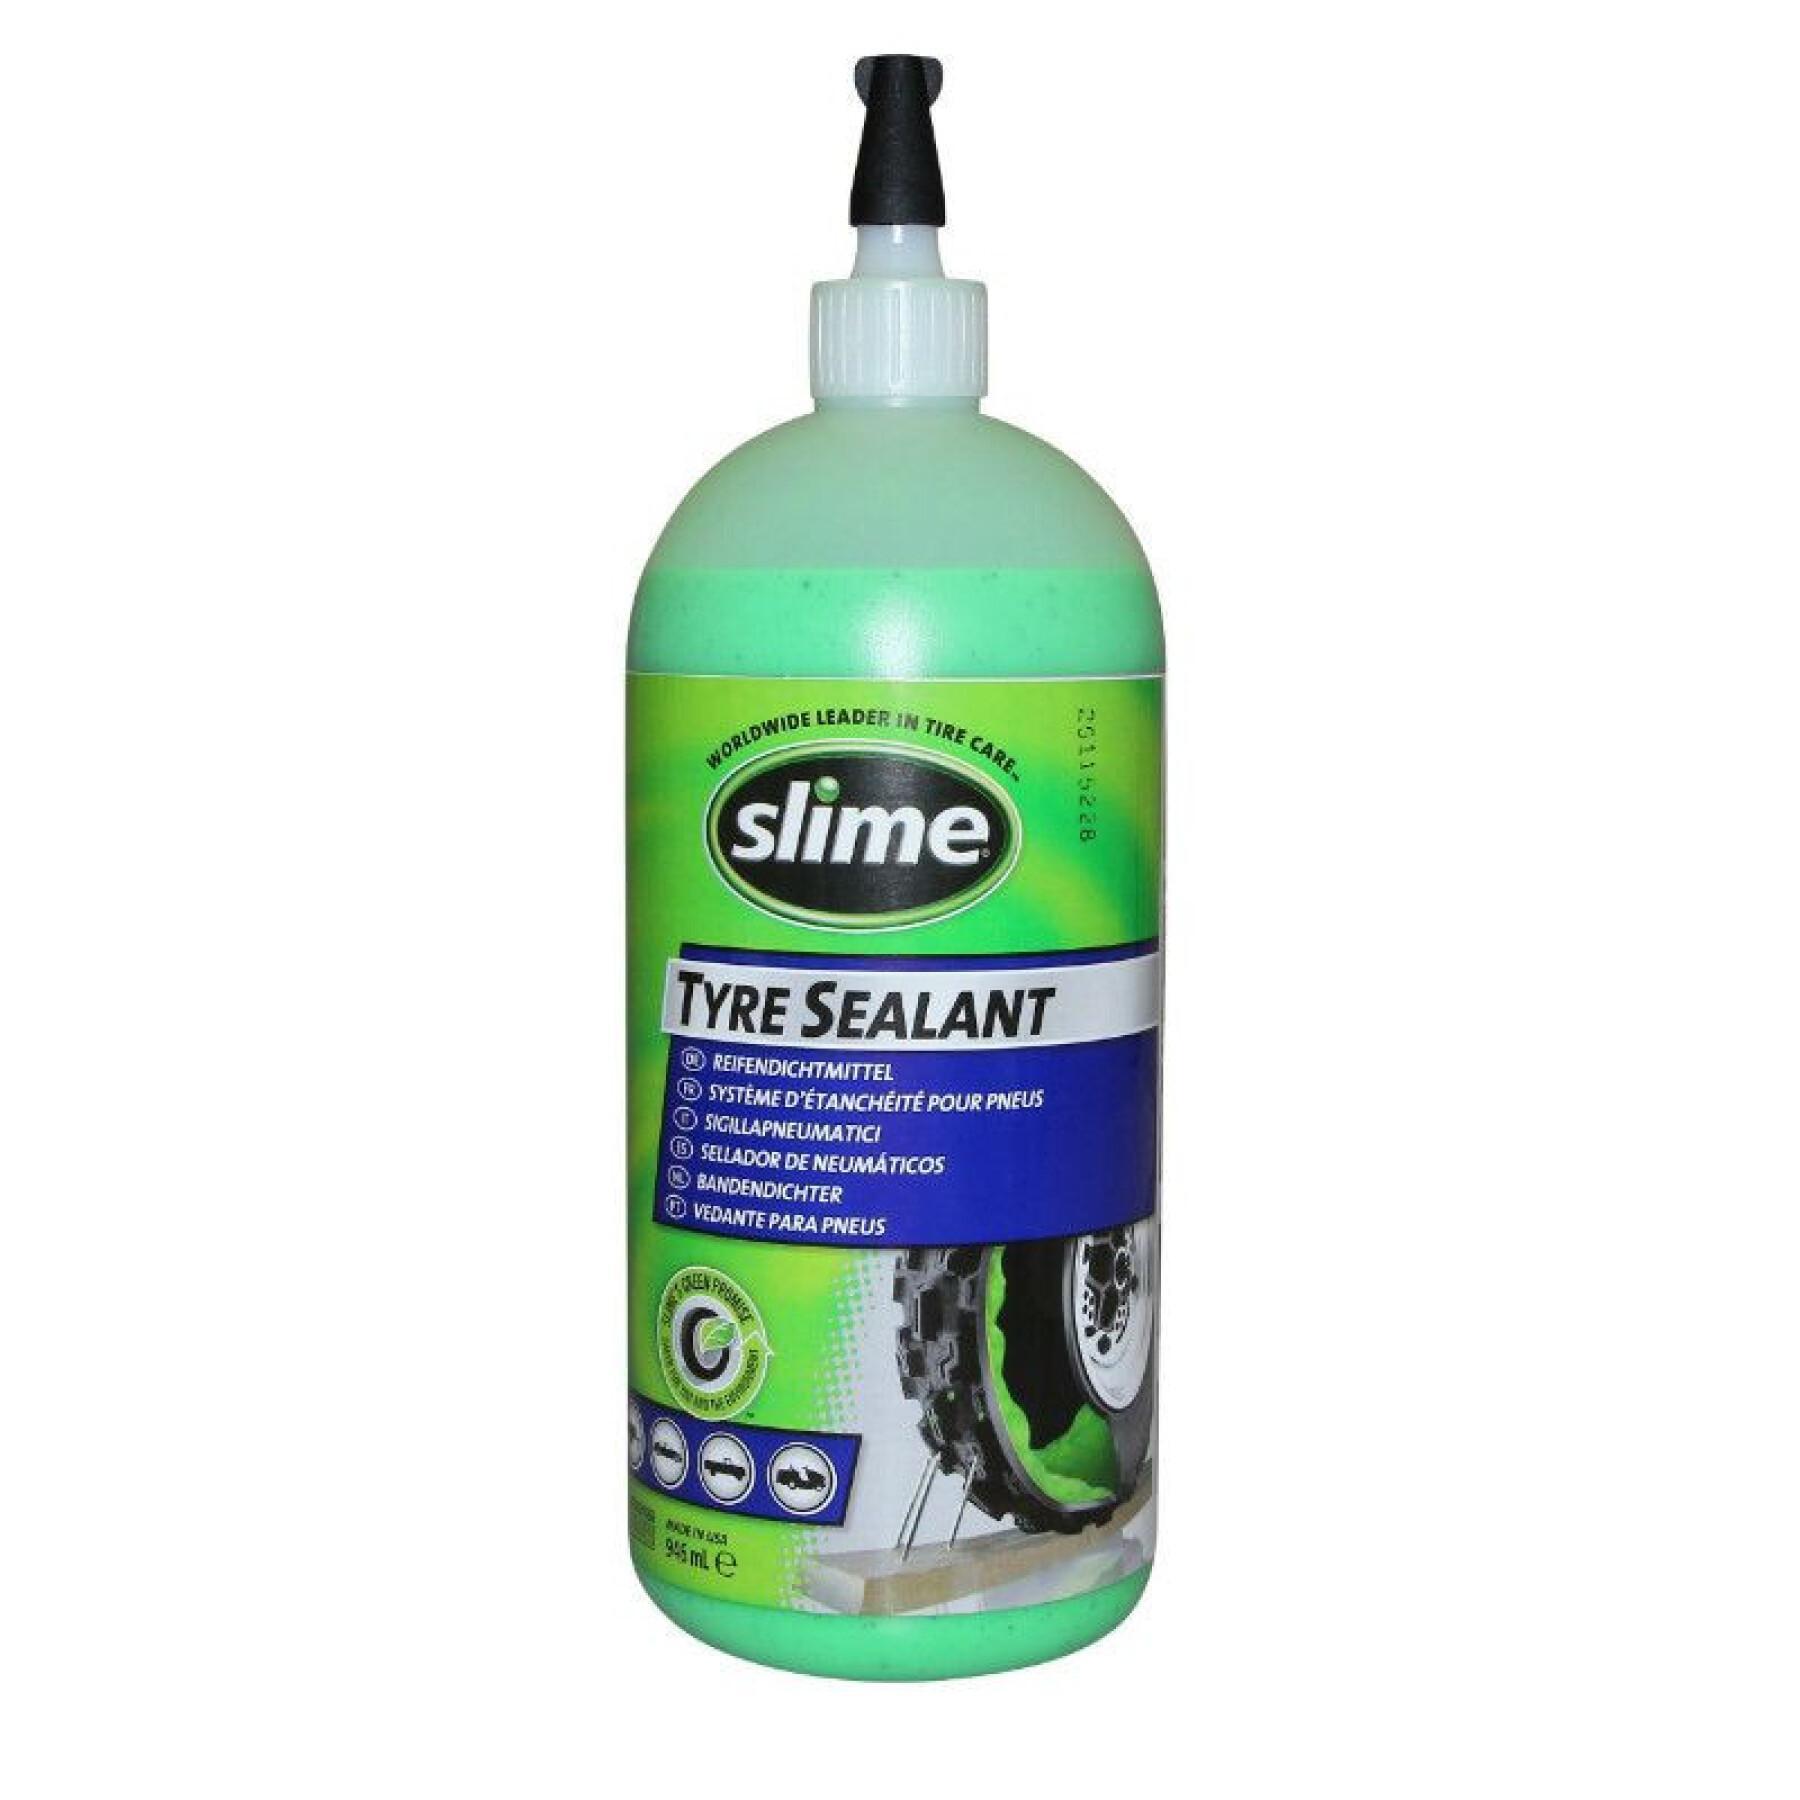 Vorbeugende Pannenschutzflüssigkeit für schlauchlose Reifen Slime